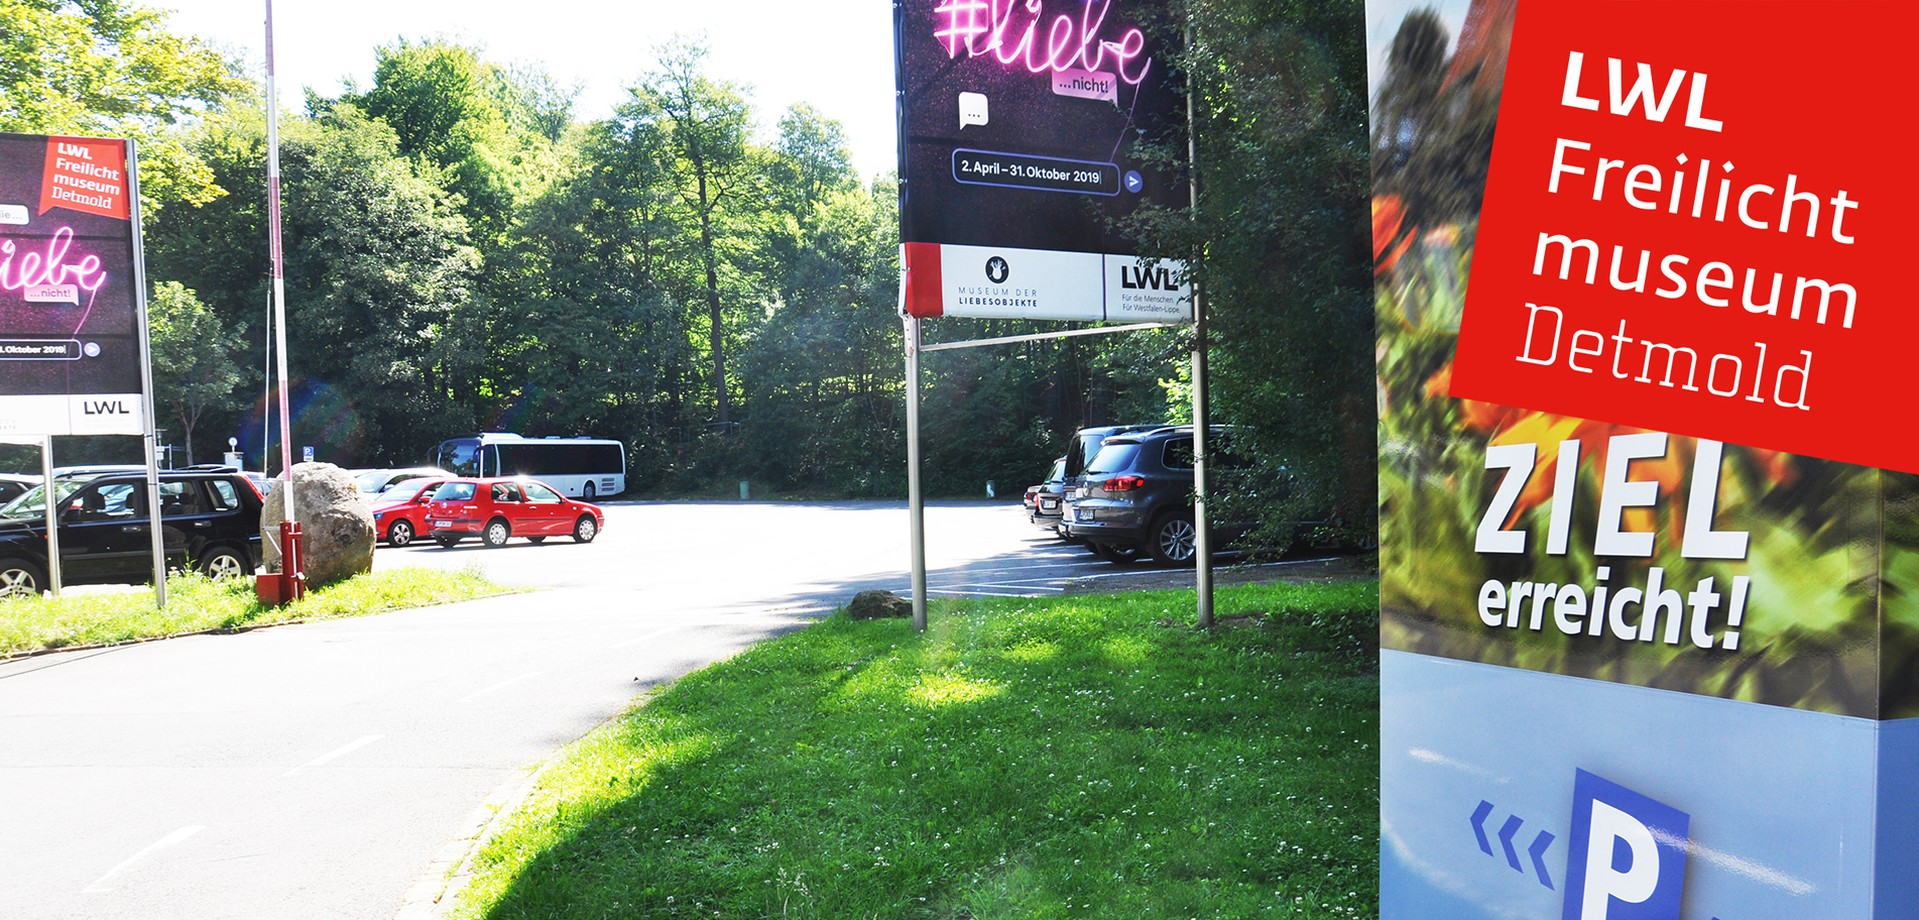 Einen Ausschnitt von unserem Parkplatz.. Rechts ist ein Schild mit der Aufschrift "Ziel erreicht". Geradeaus unser Plakat zur Sonderausstellung Liebe.